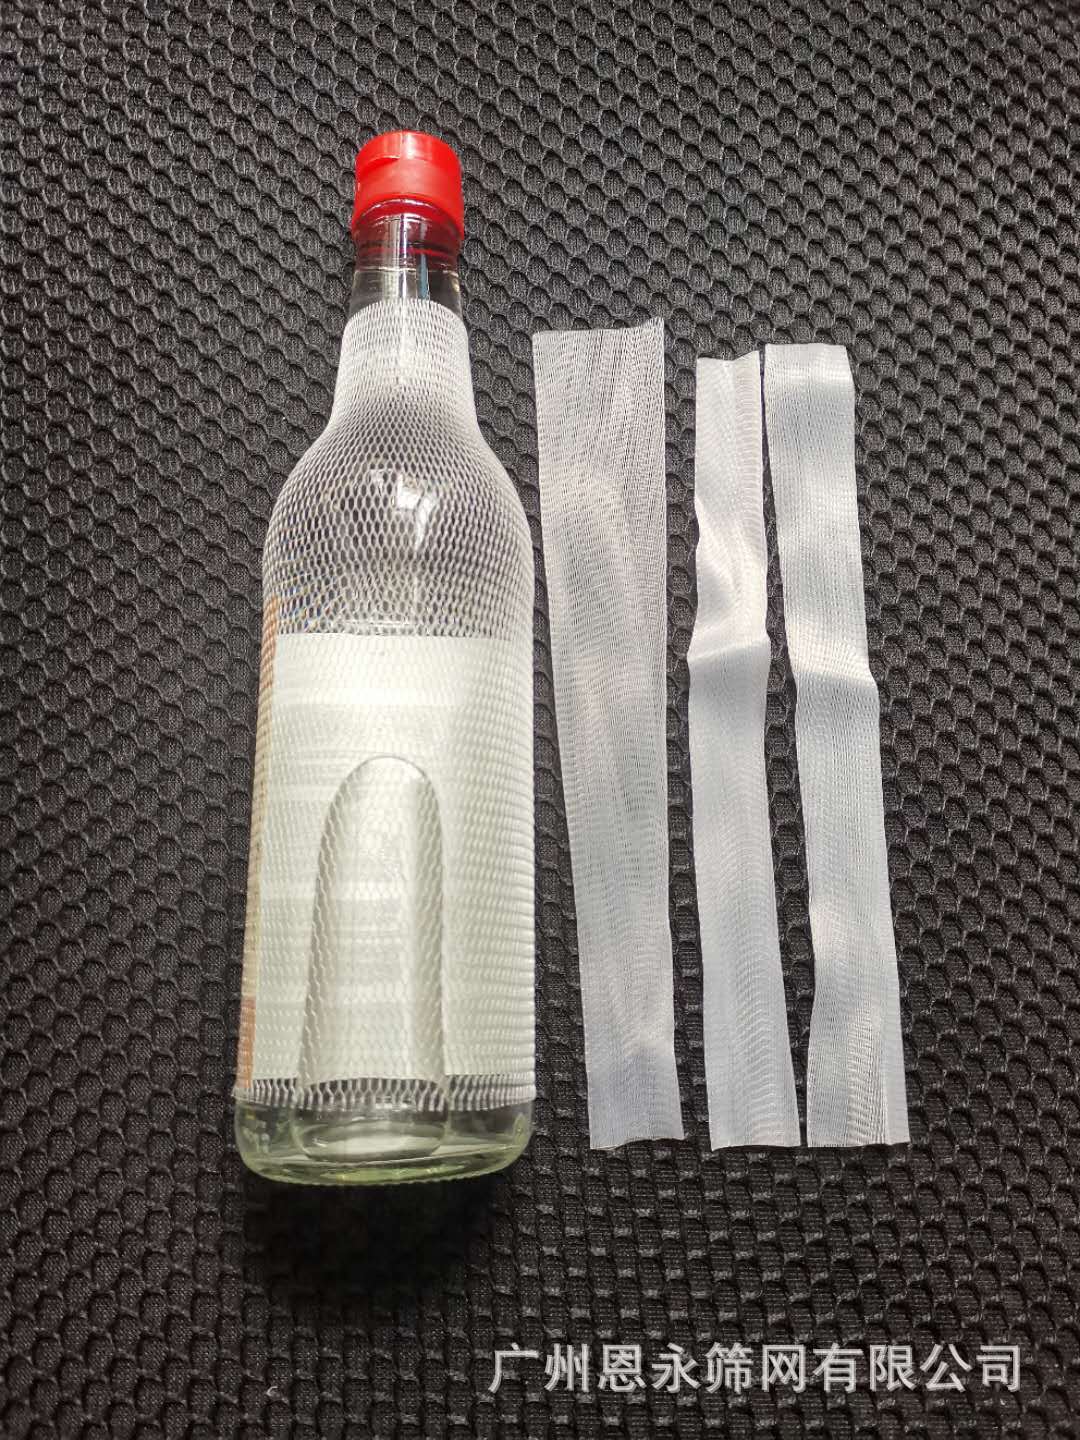 厂家订做 玻璃瓶网套 玻璃瓶包装网网套 玻璃瓶保护网套